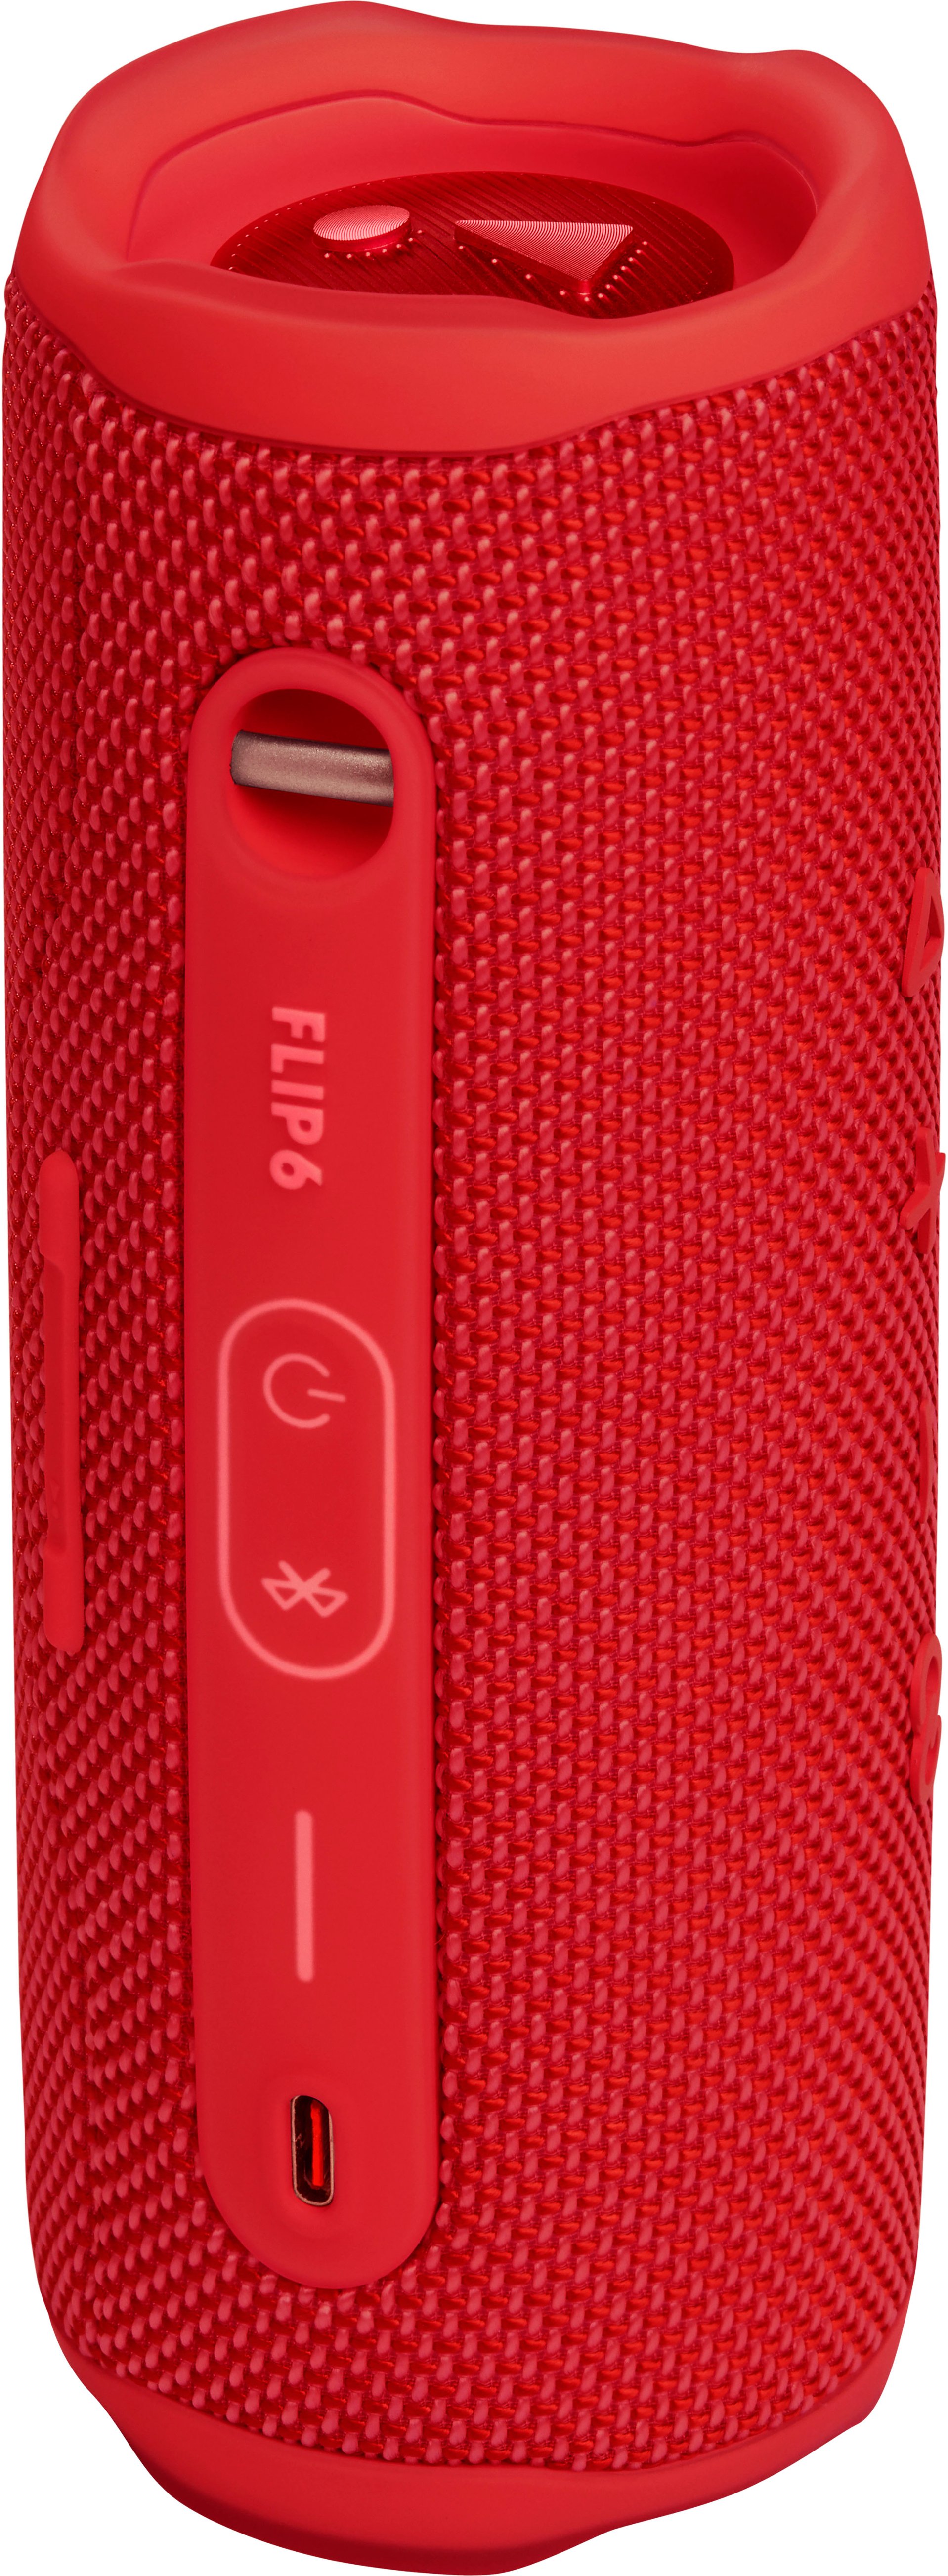 JBL Speaker Red Waterproof Buy - JBLFLIP6REDAM Portable FLIP6 Best